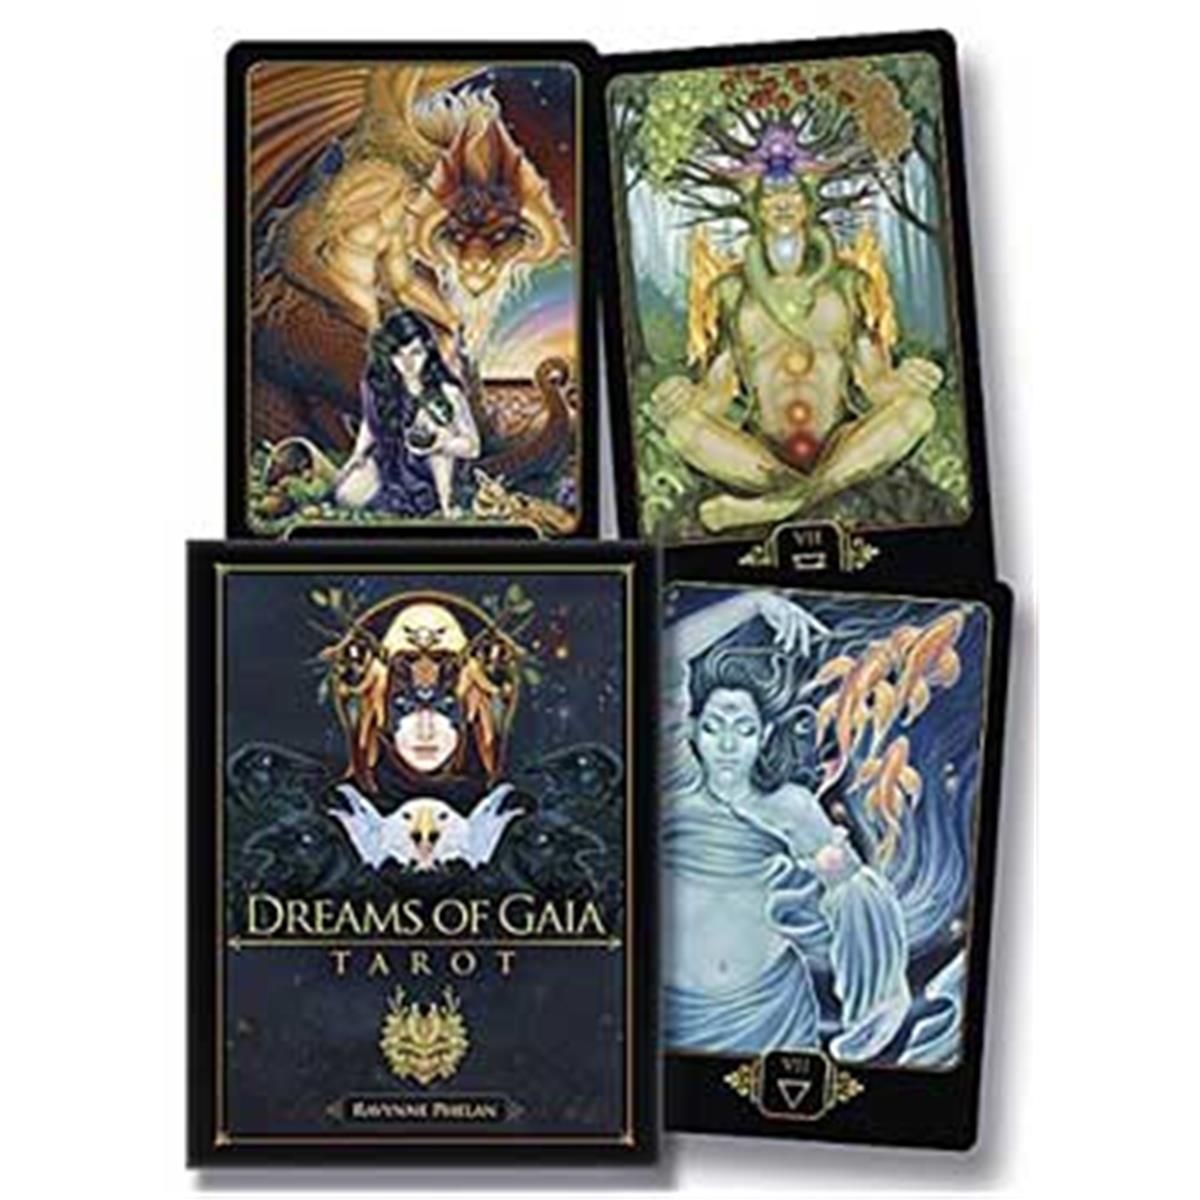 Azure Green Ddregai Dreams Of Gaia Deck & Book By Ravynne Phelan